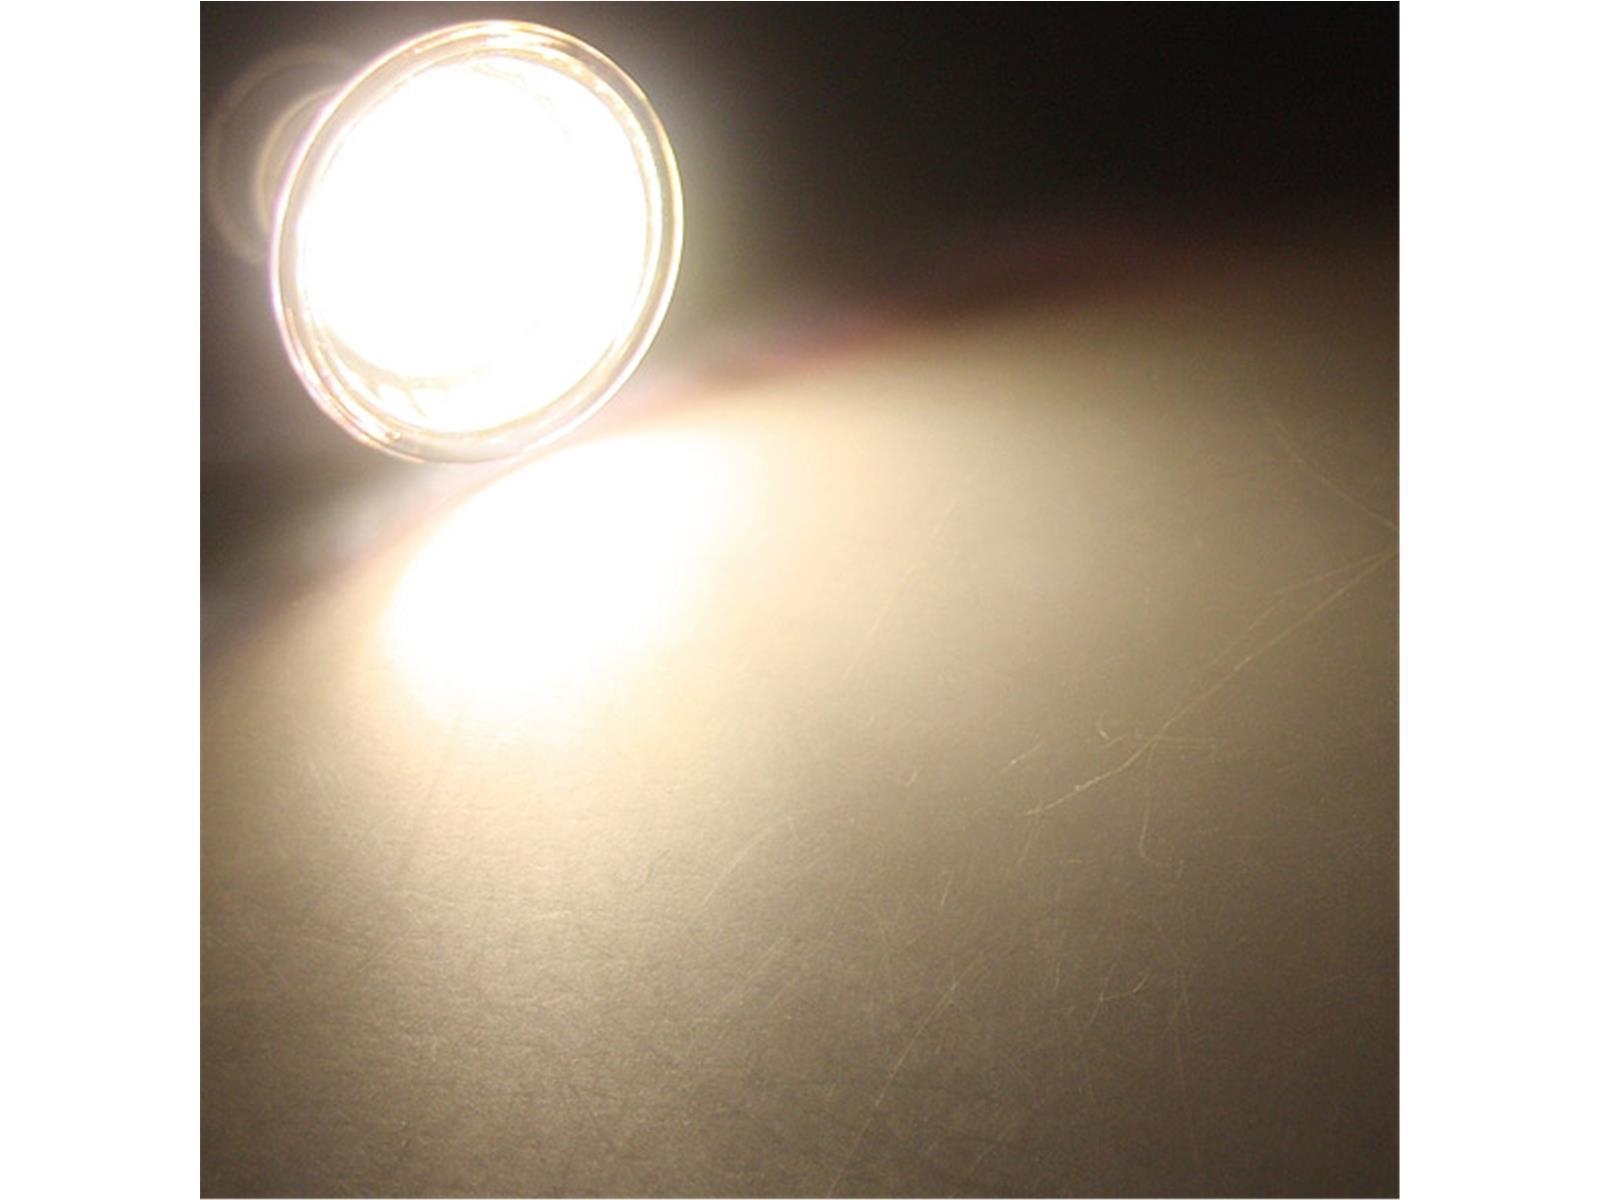 LED Strahler MR11, 8x 2835 SMD LEDs12V, 2W, 140 Lumen, 3000k / warmweiß